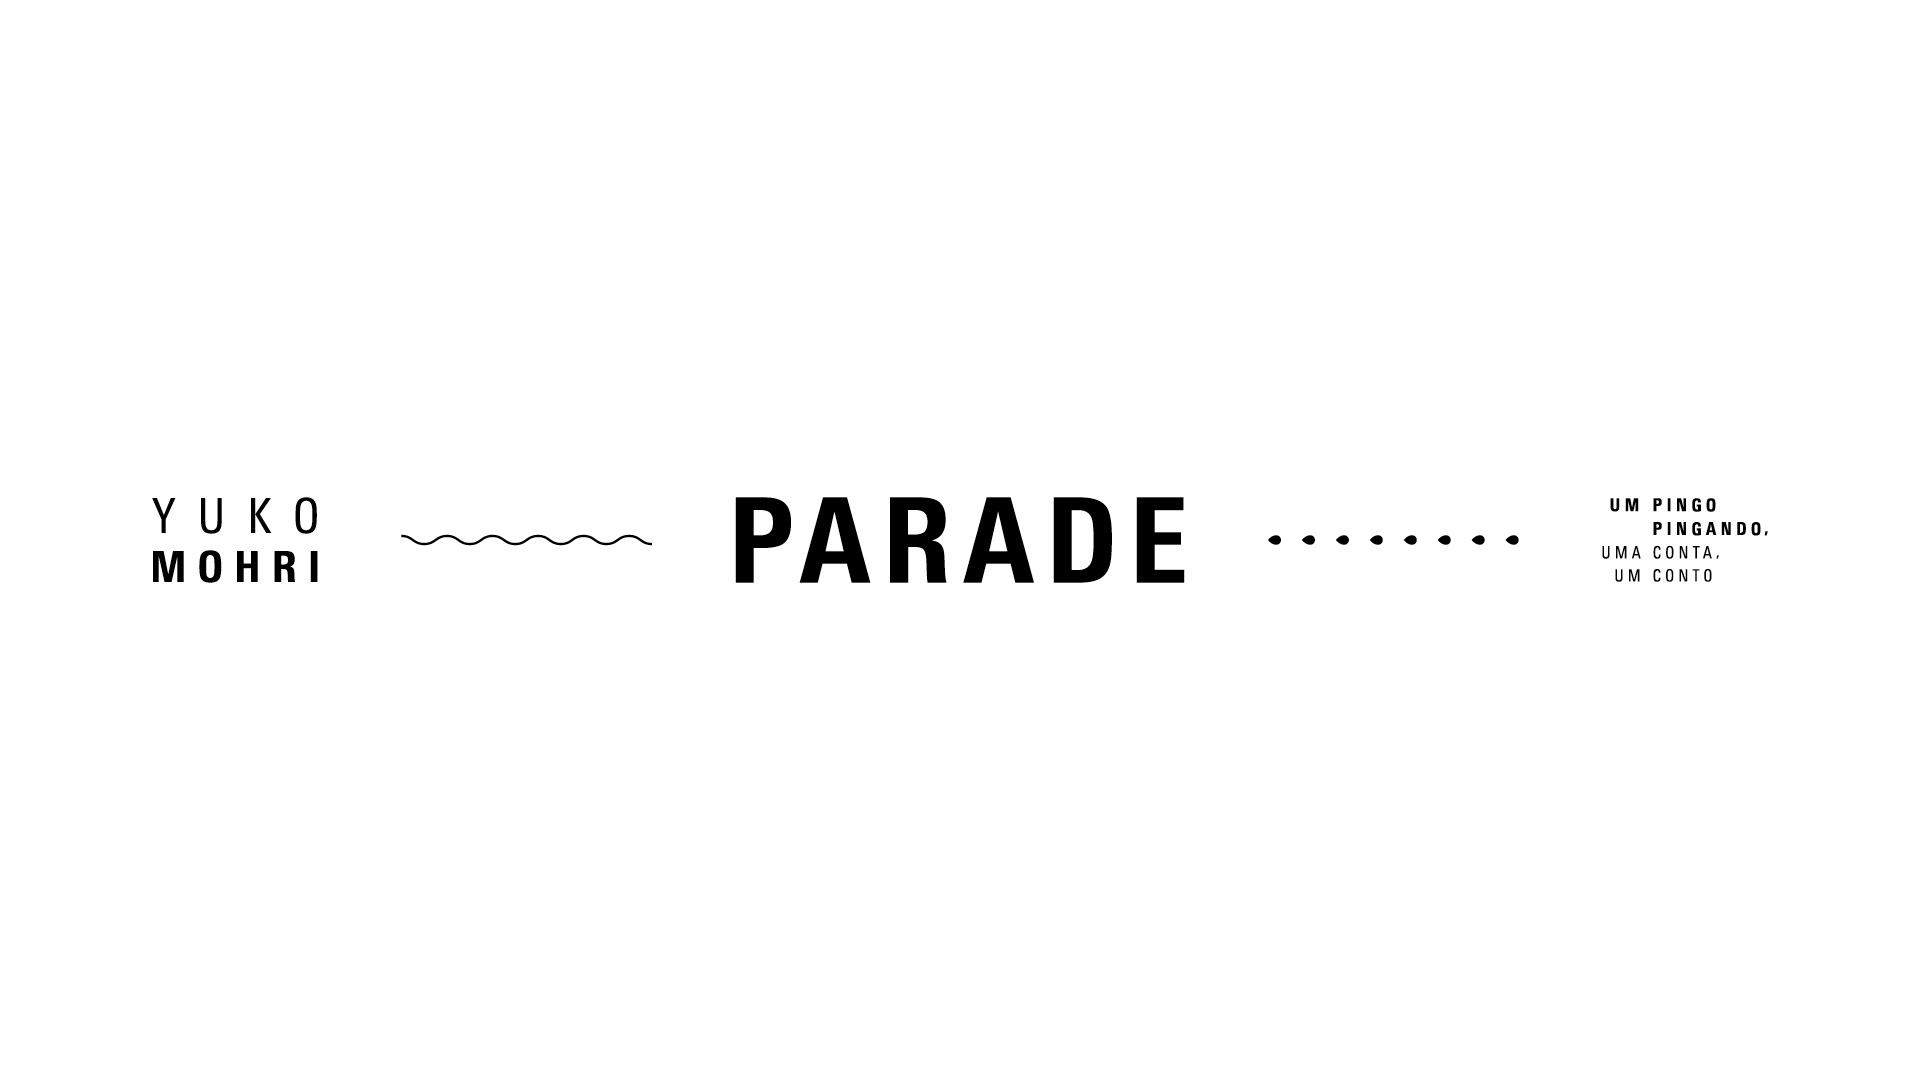 Banner informativo. Yuko Mohri. Parade – um pingo pingando, uma conta, um conto. O fundo da imagem é branco.